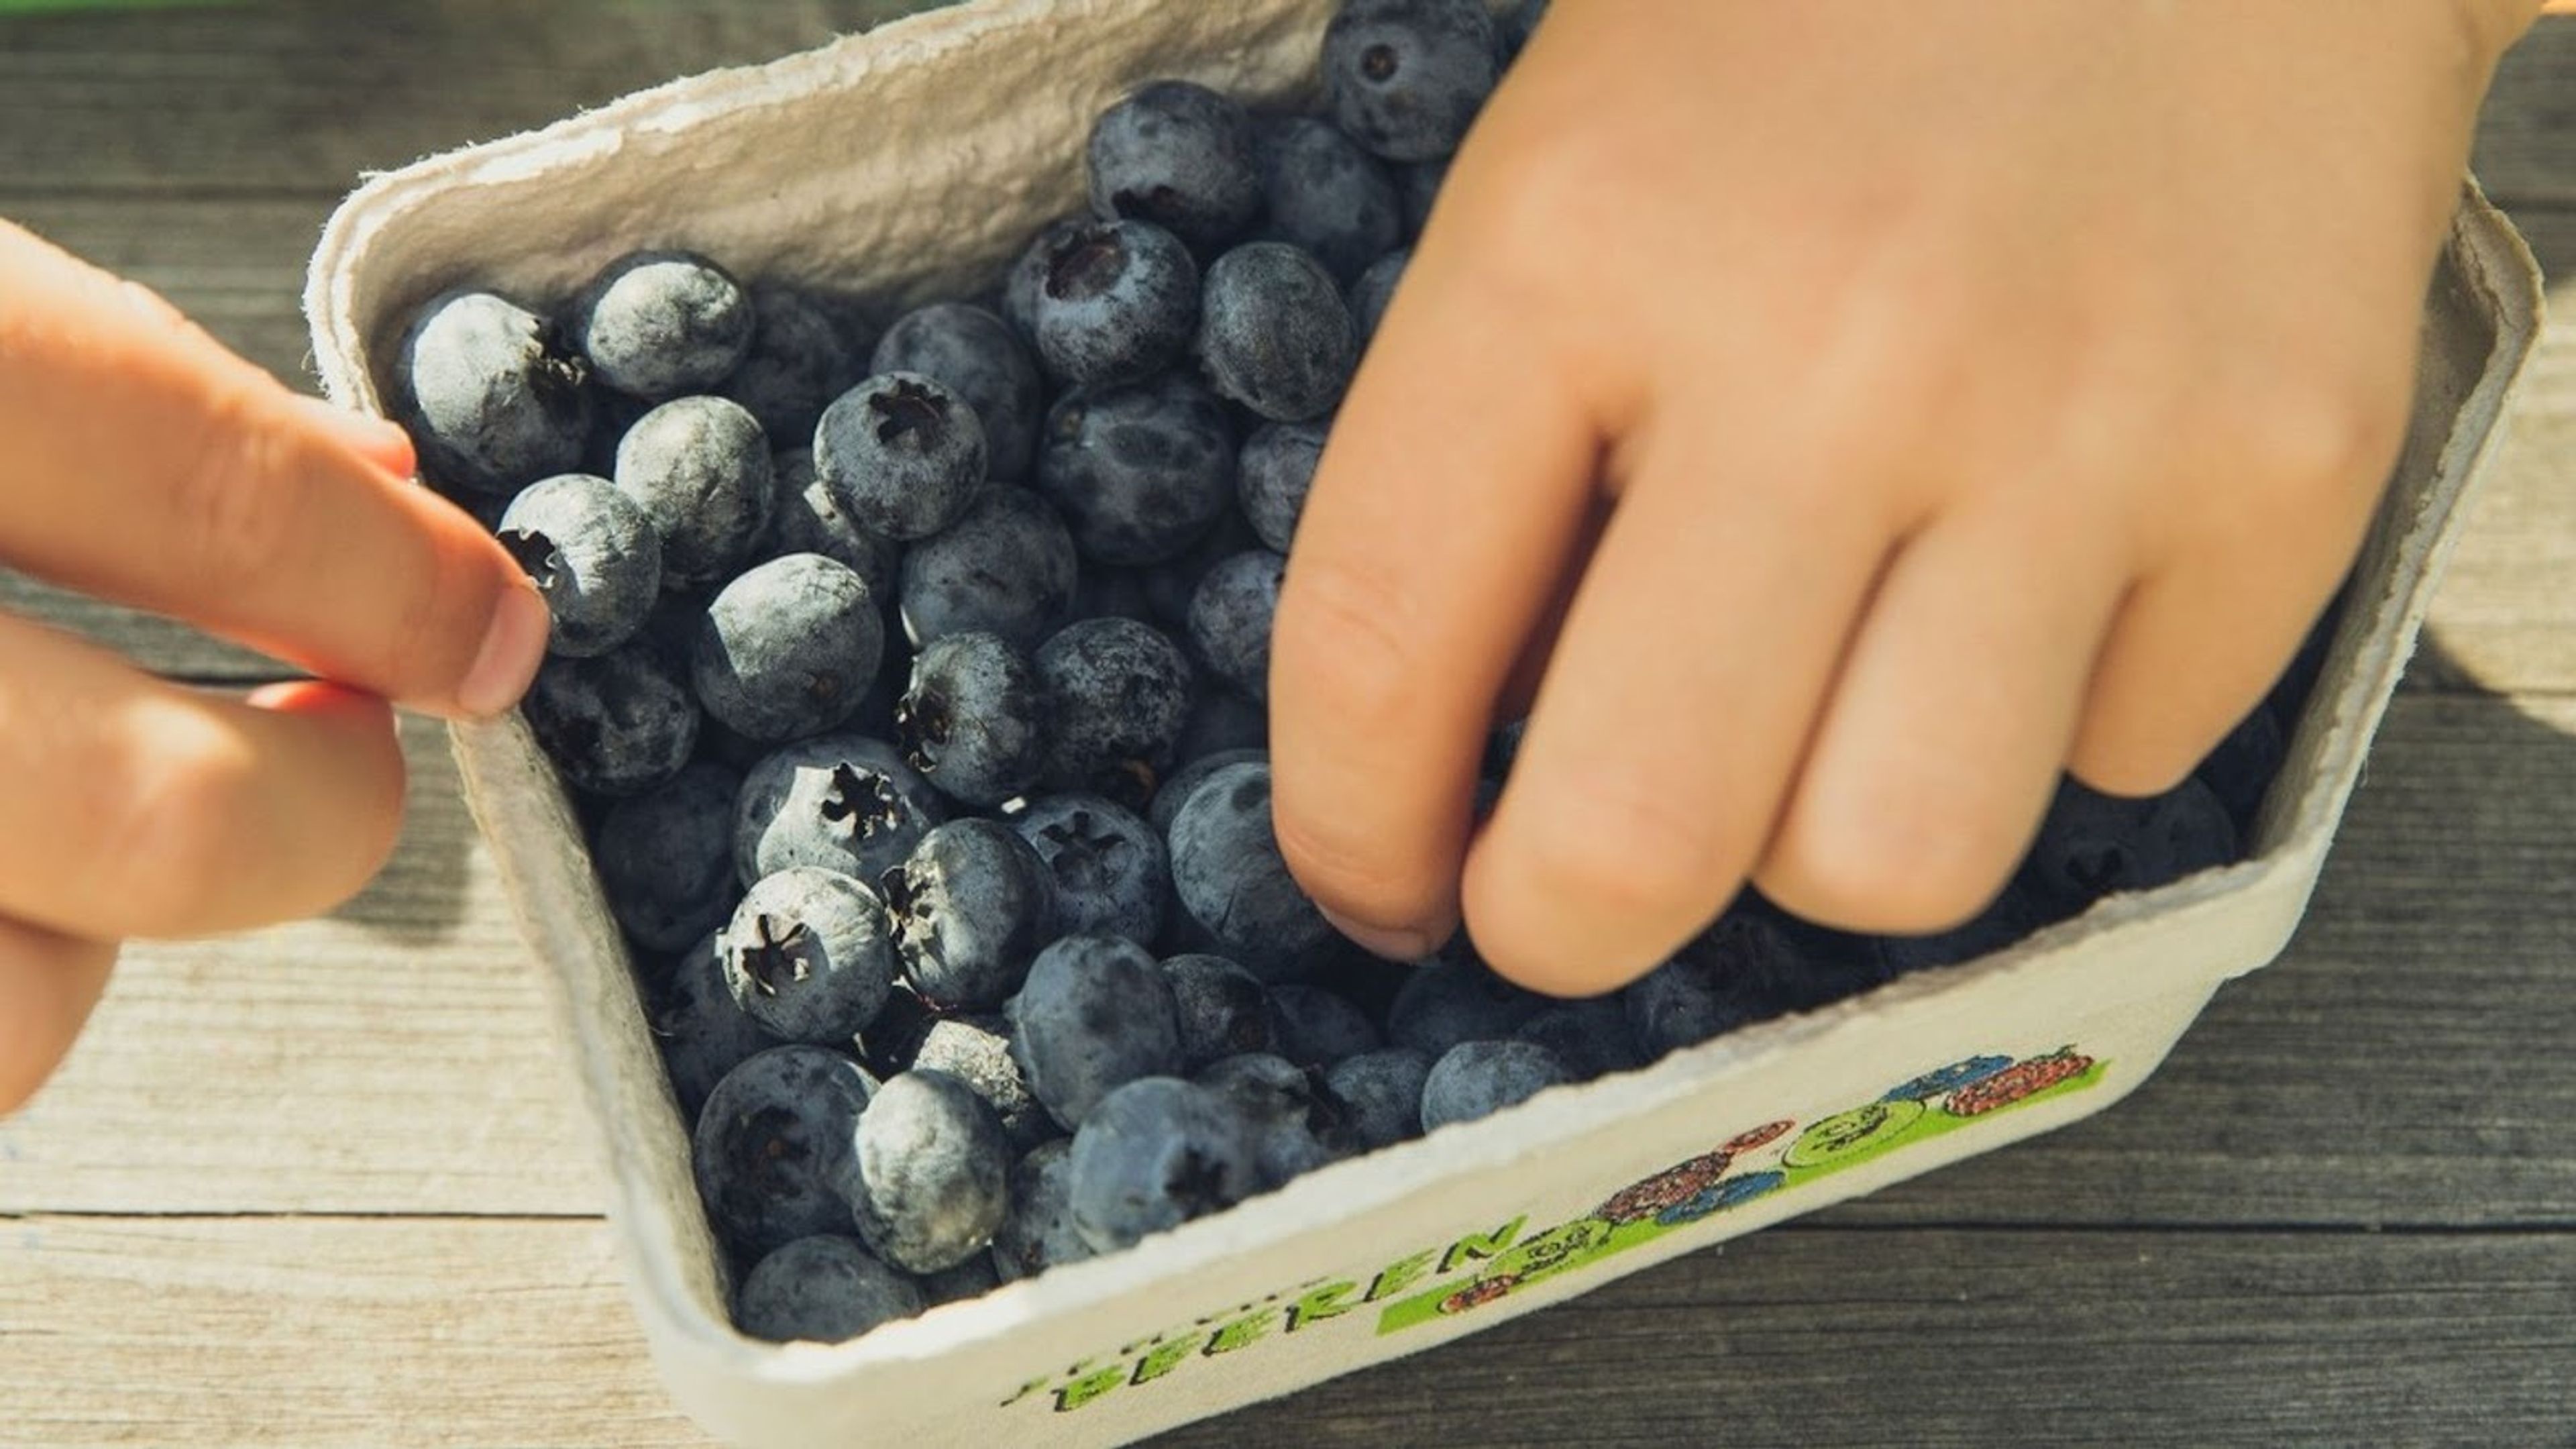 Children eating blueberries